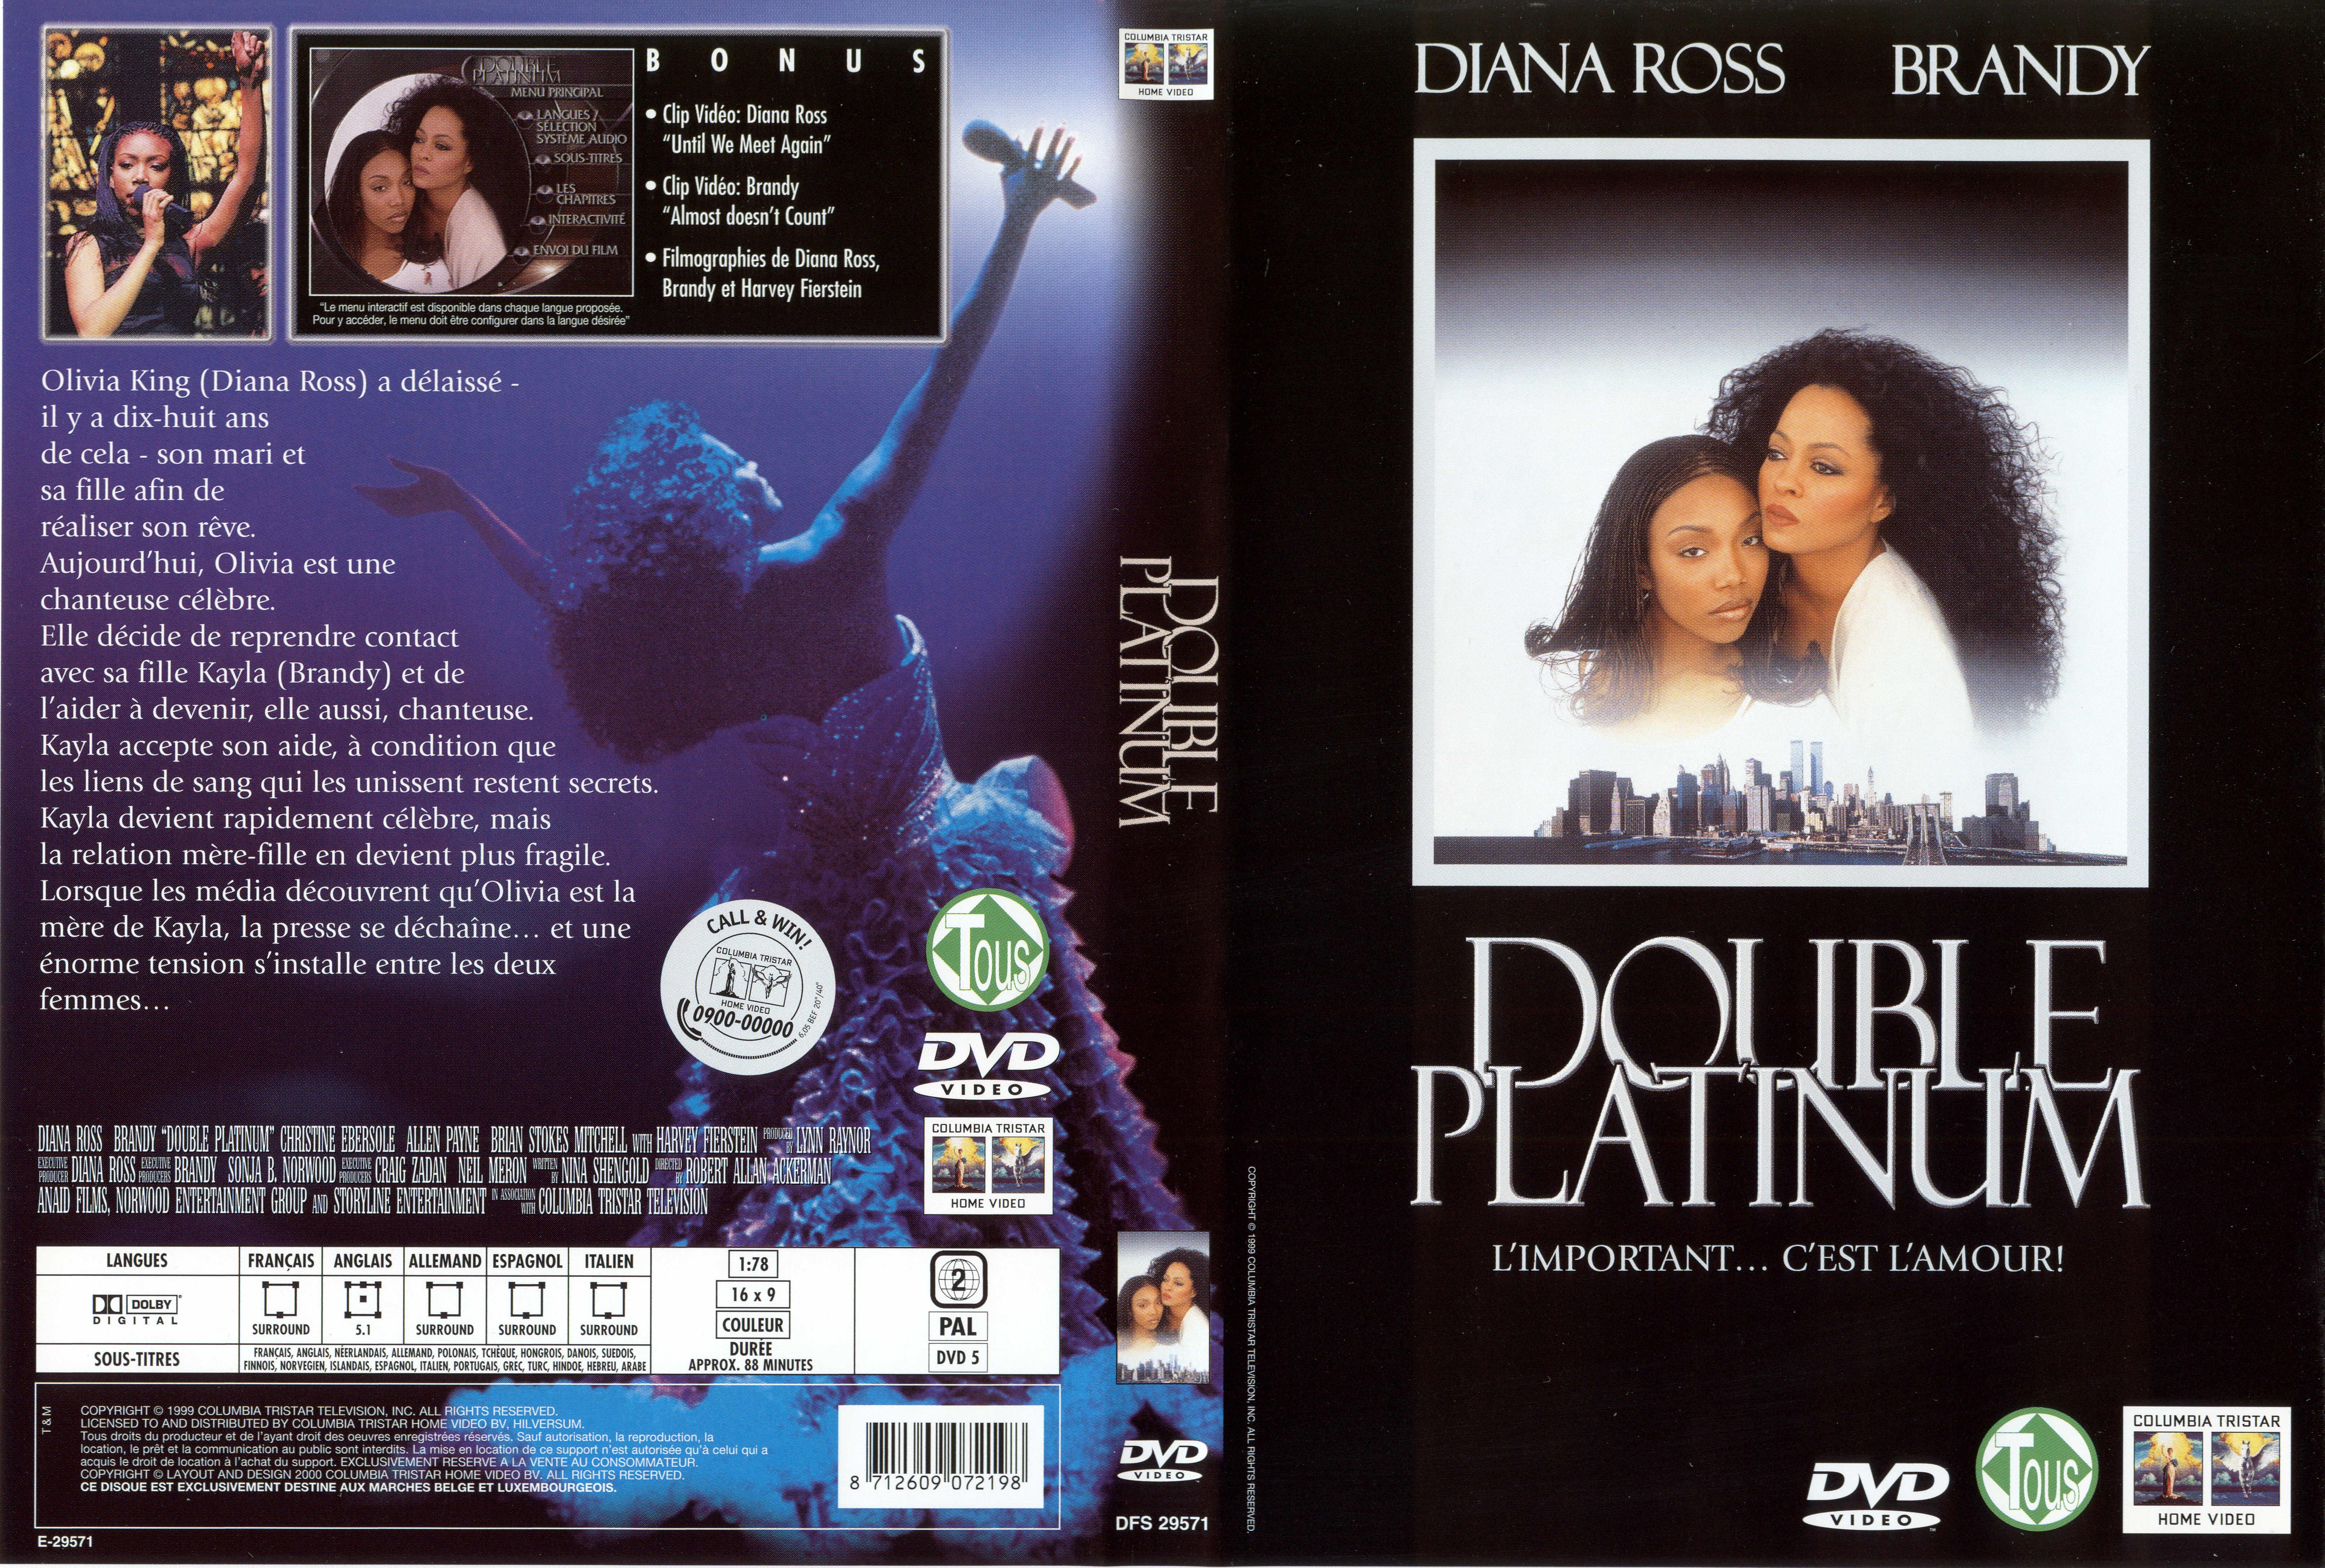 Jaquette DVD Double platinum